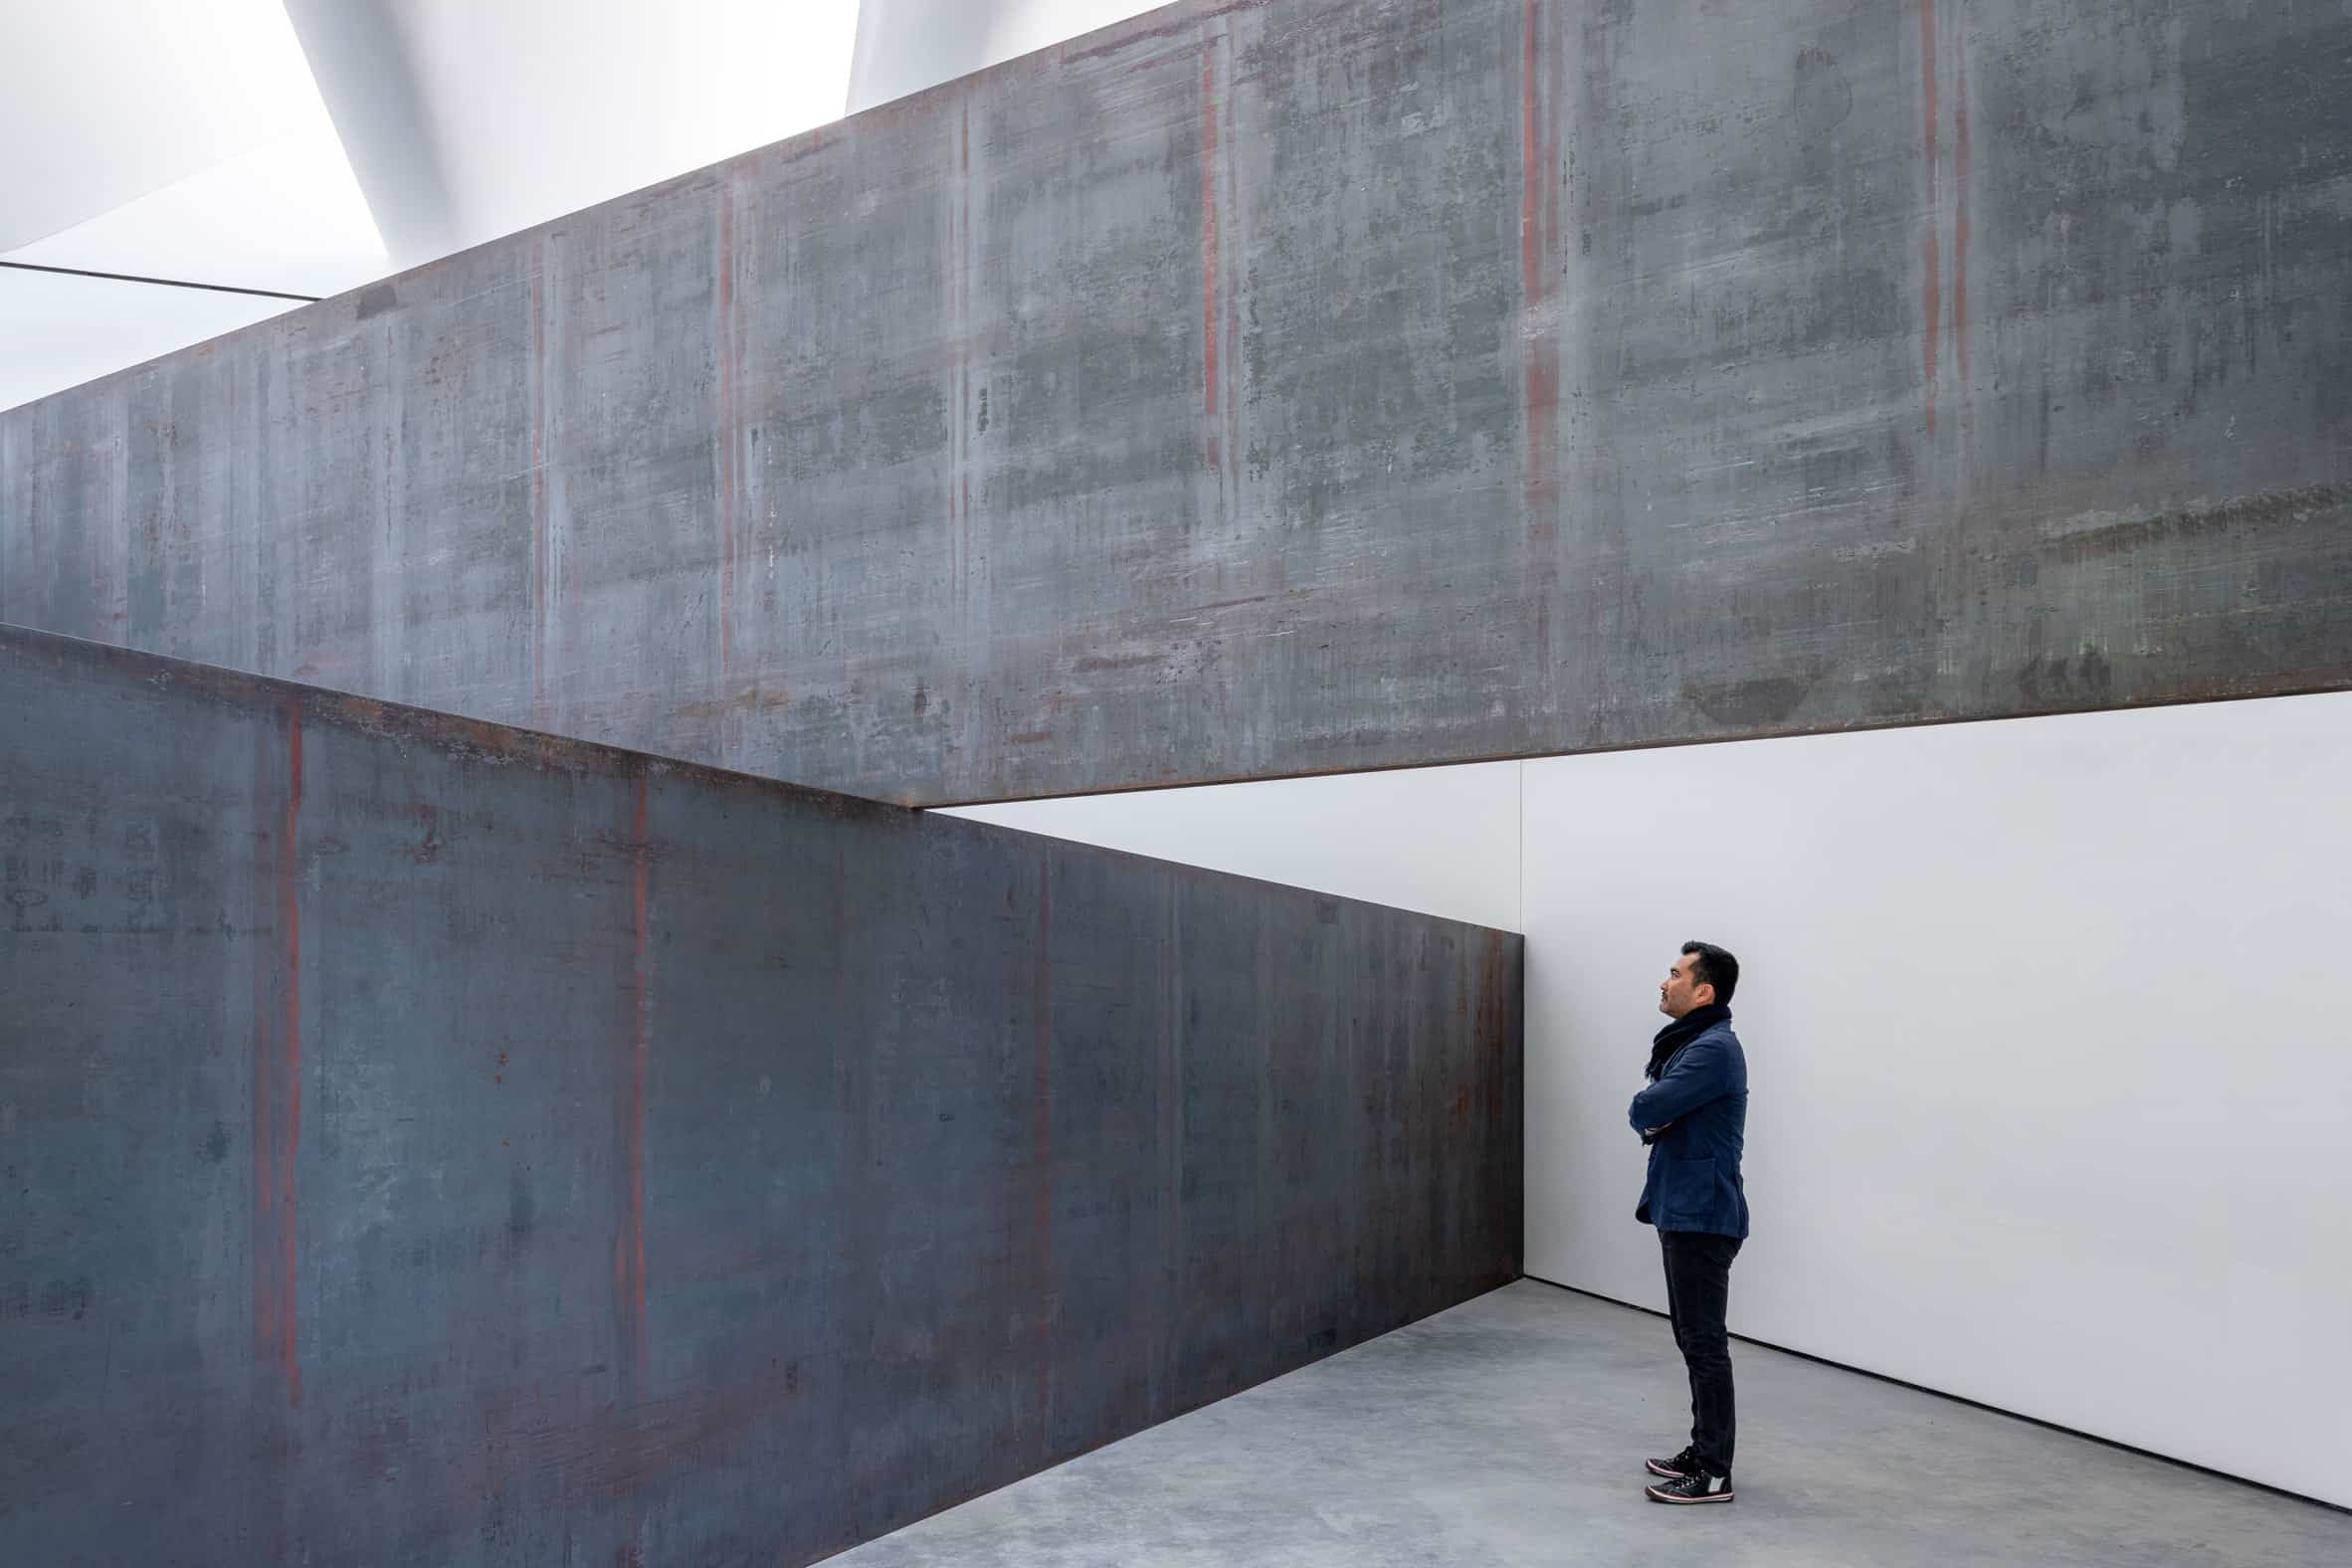 Houten paviljoen voor sculptuur van Richard Serra